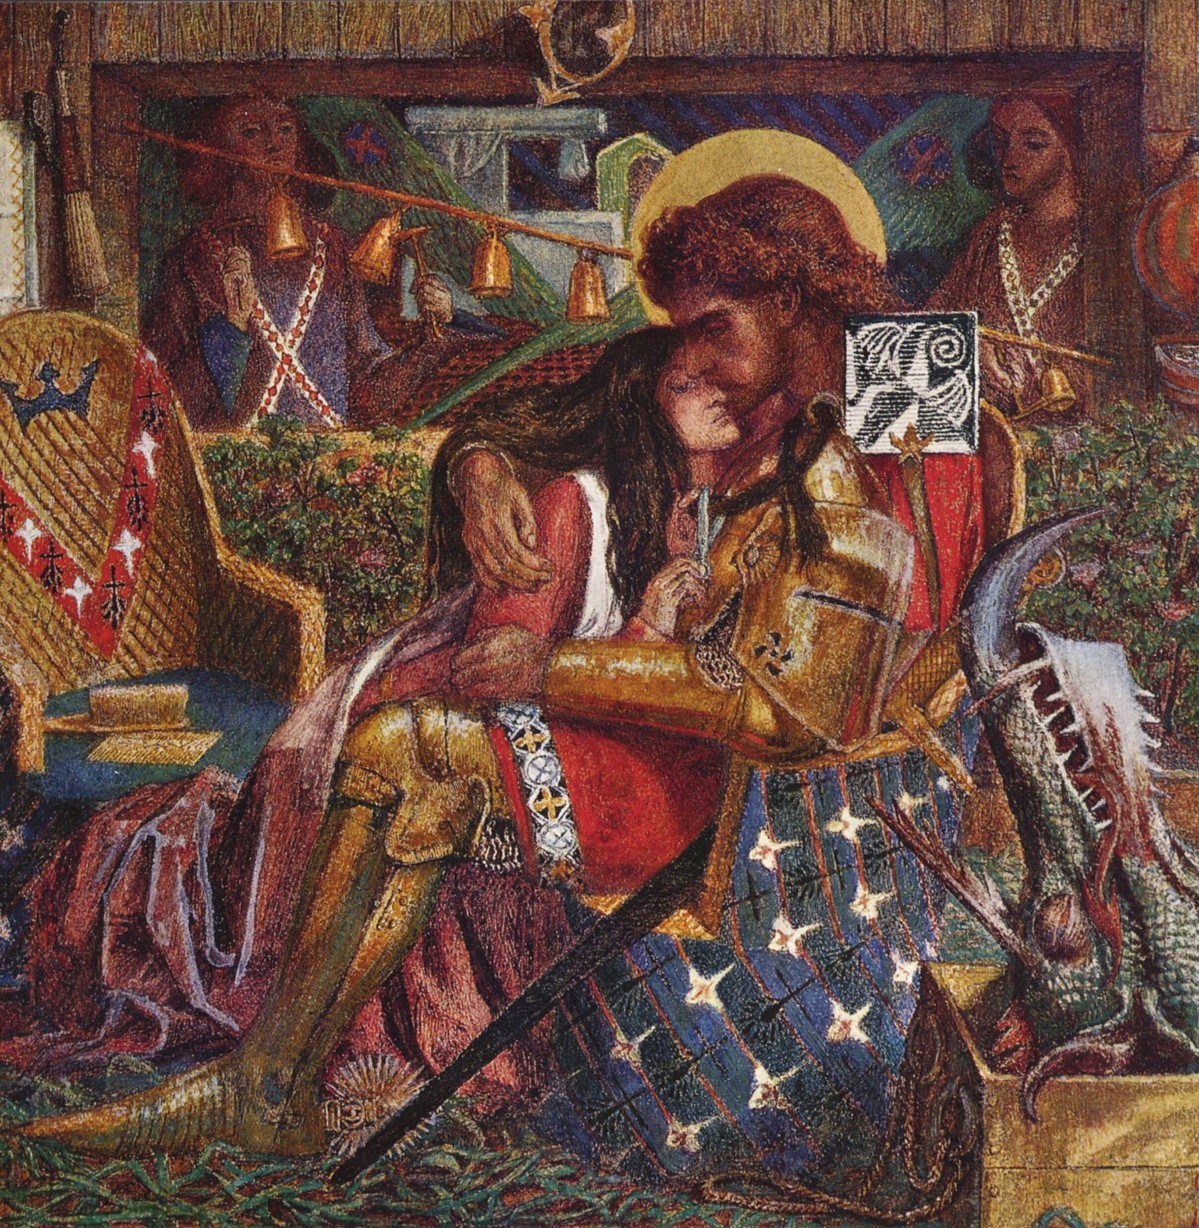 Von innerer Harmonie, Mensch und Glockenklang. Die Hochzeit des hl. Georg mit der Prinzessin Sabra. Dante Gabriel Rossetti, 1857, Tate Gallery, London